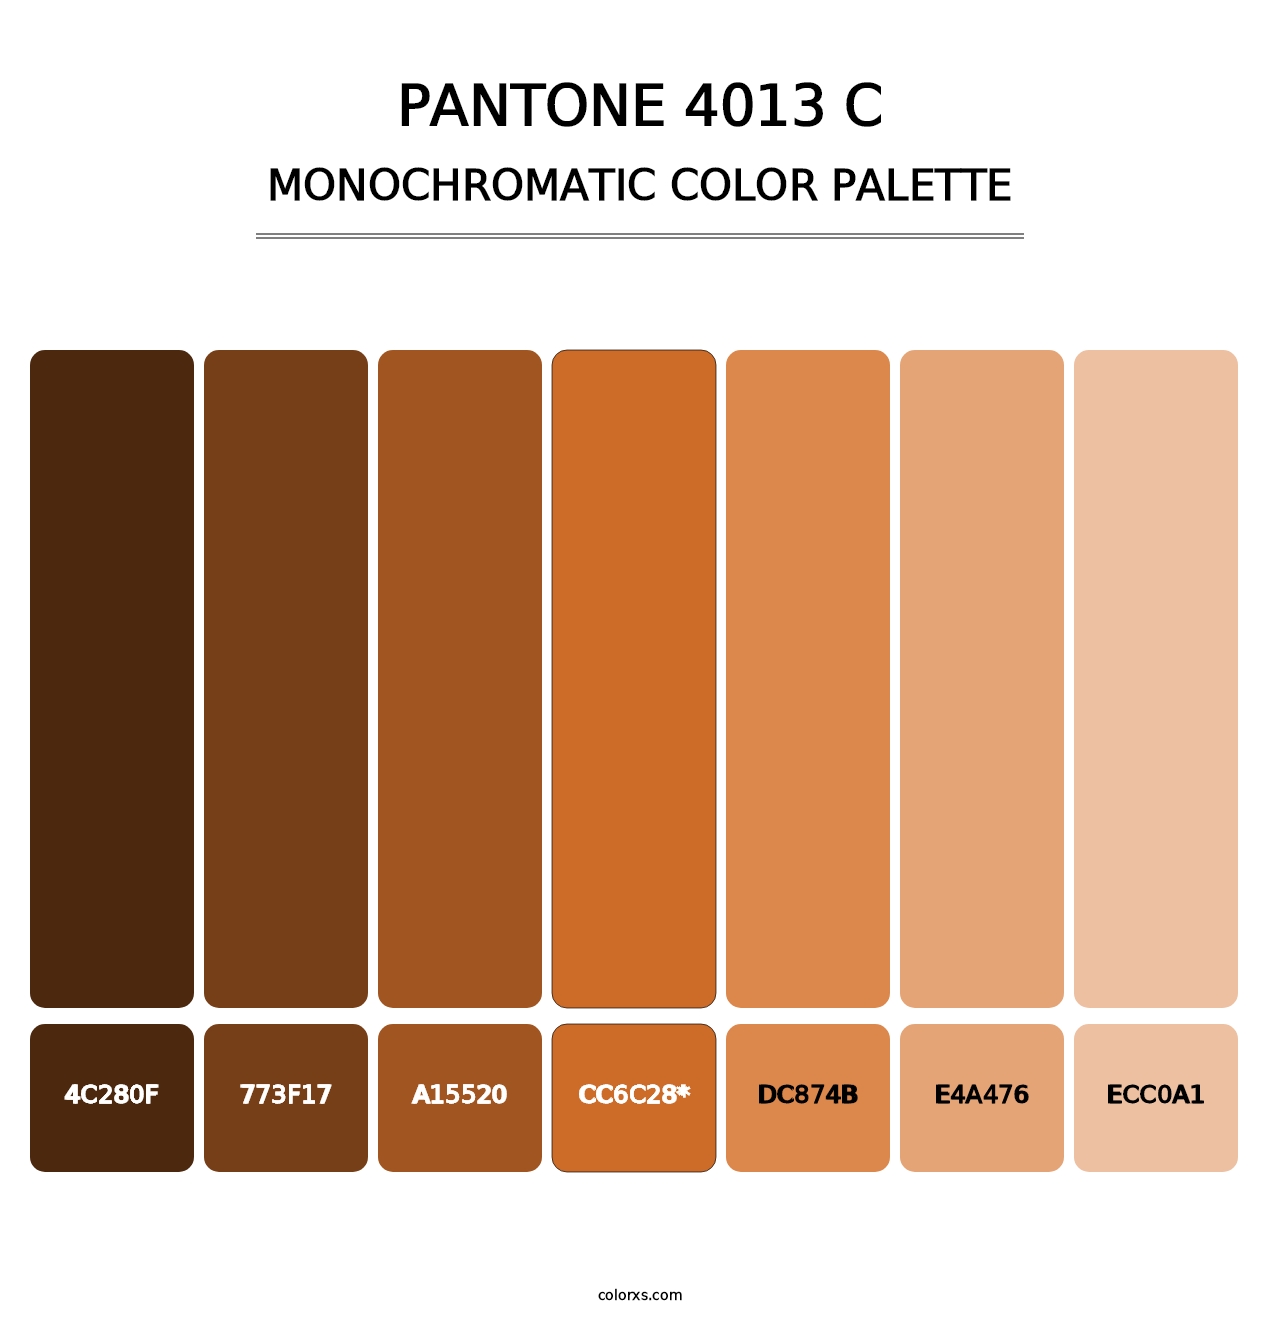 PANTONE 4013 C - Monochromatic Color Palette